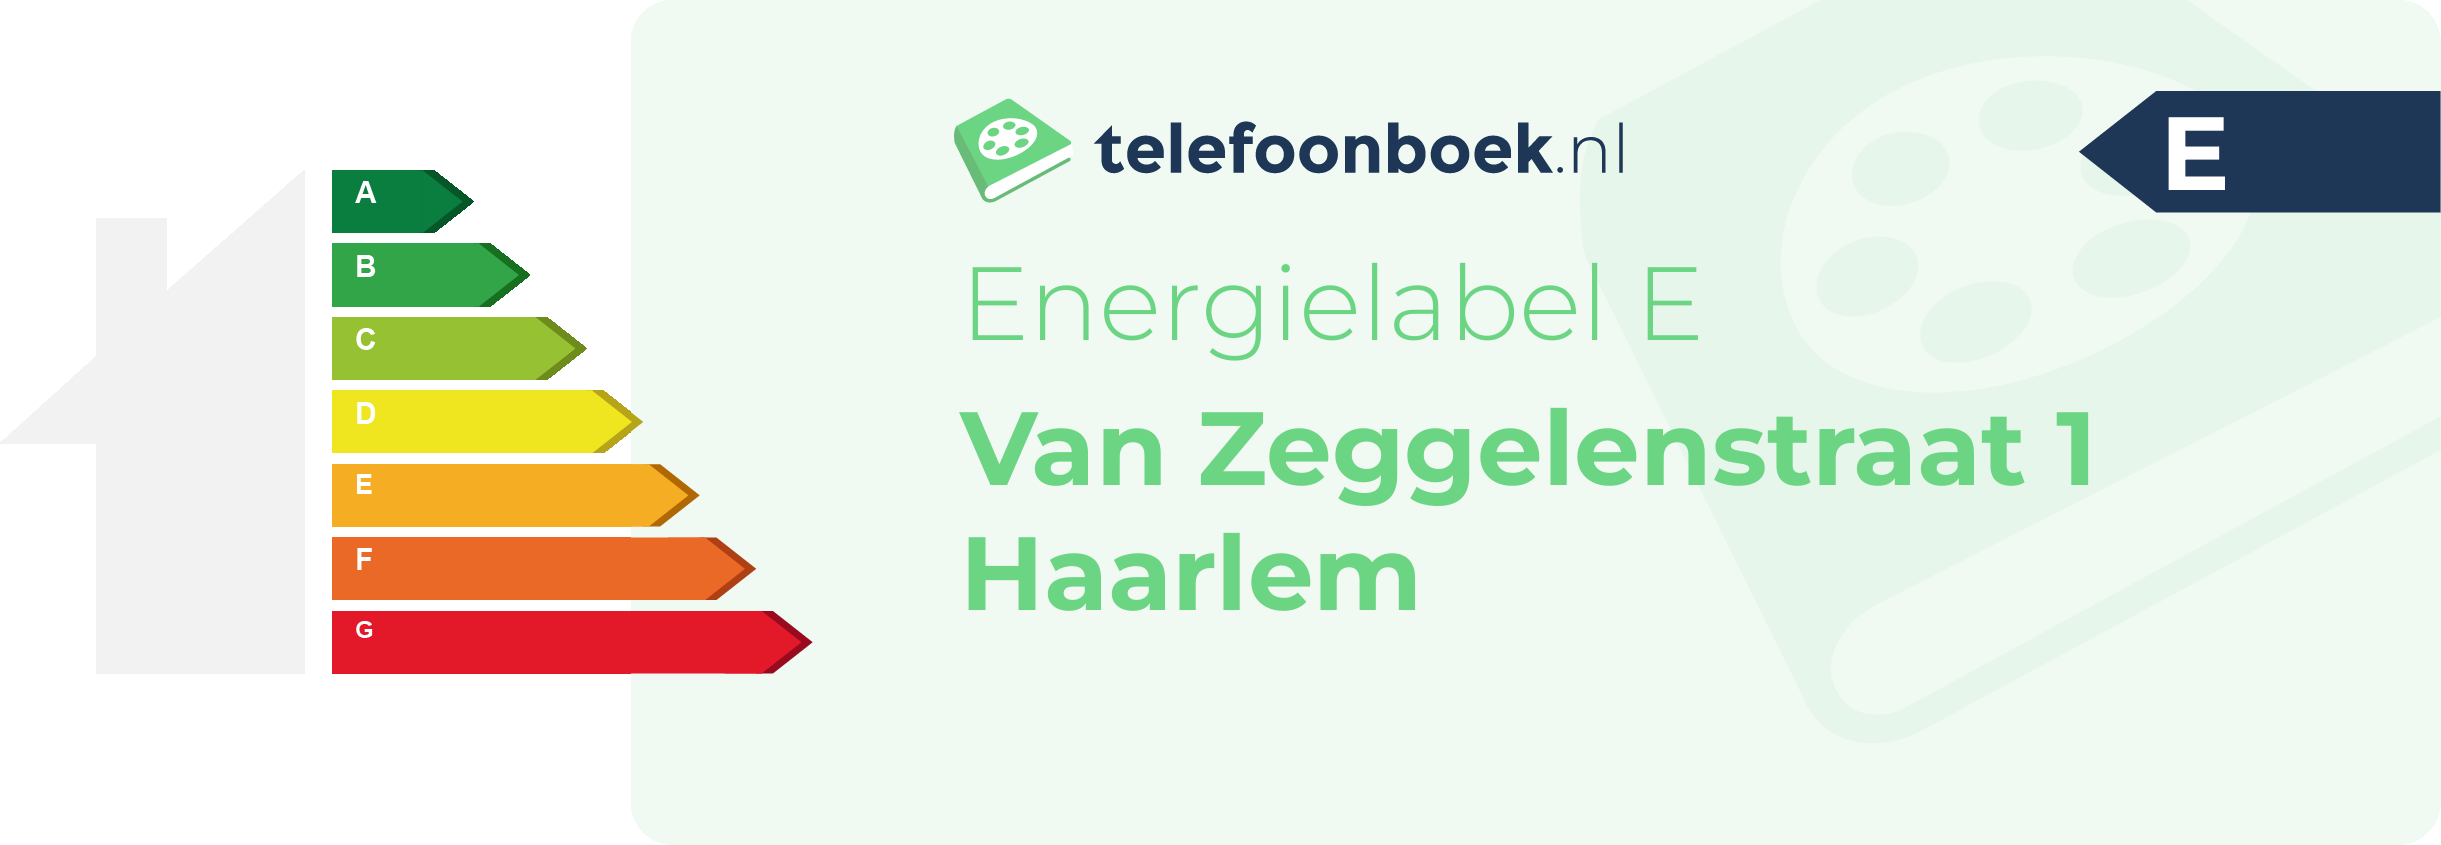 Energielabel Van Zeggelenstraat 1 Haarlem